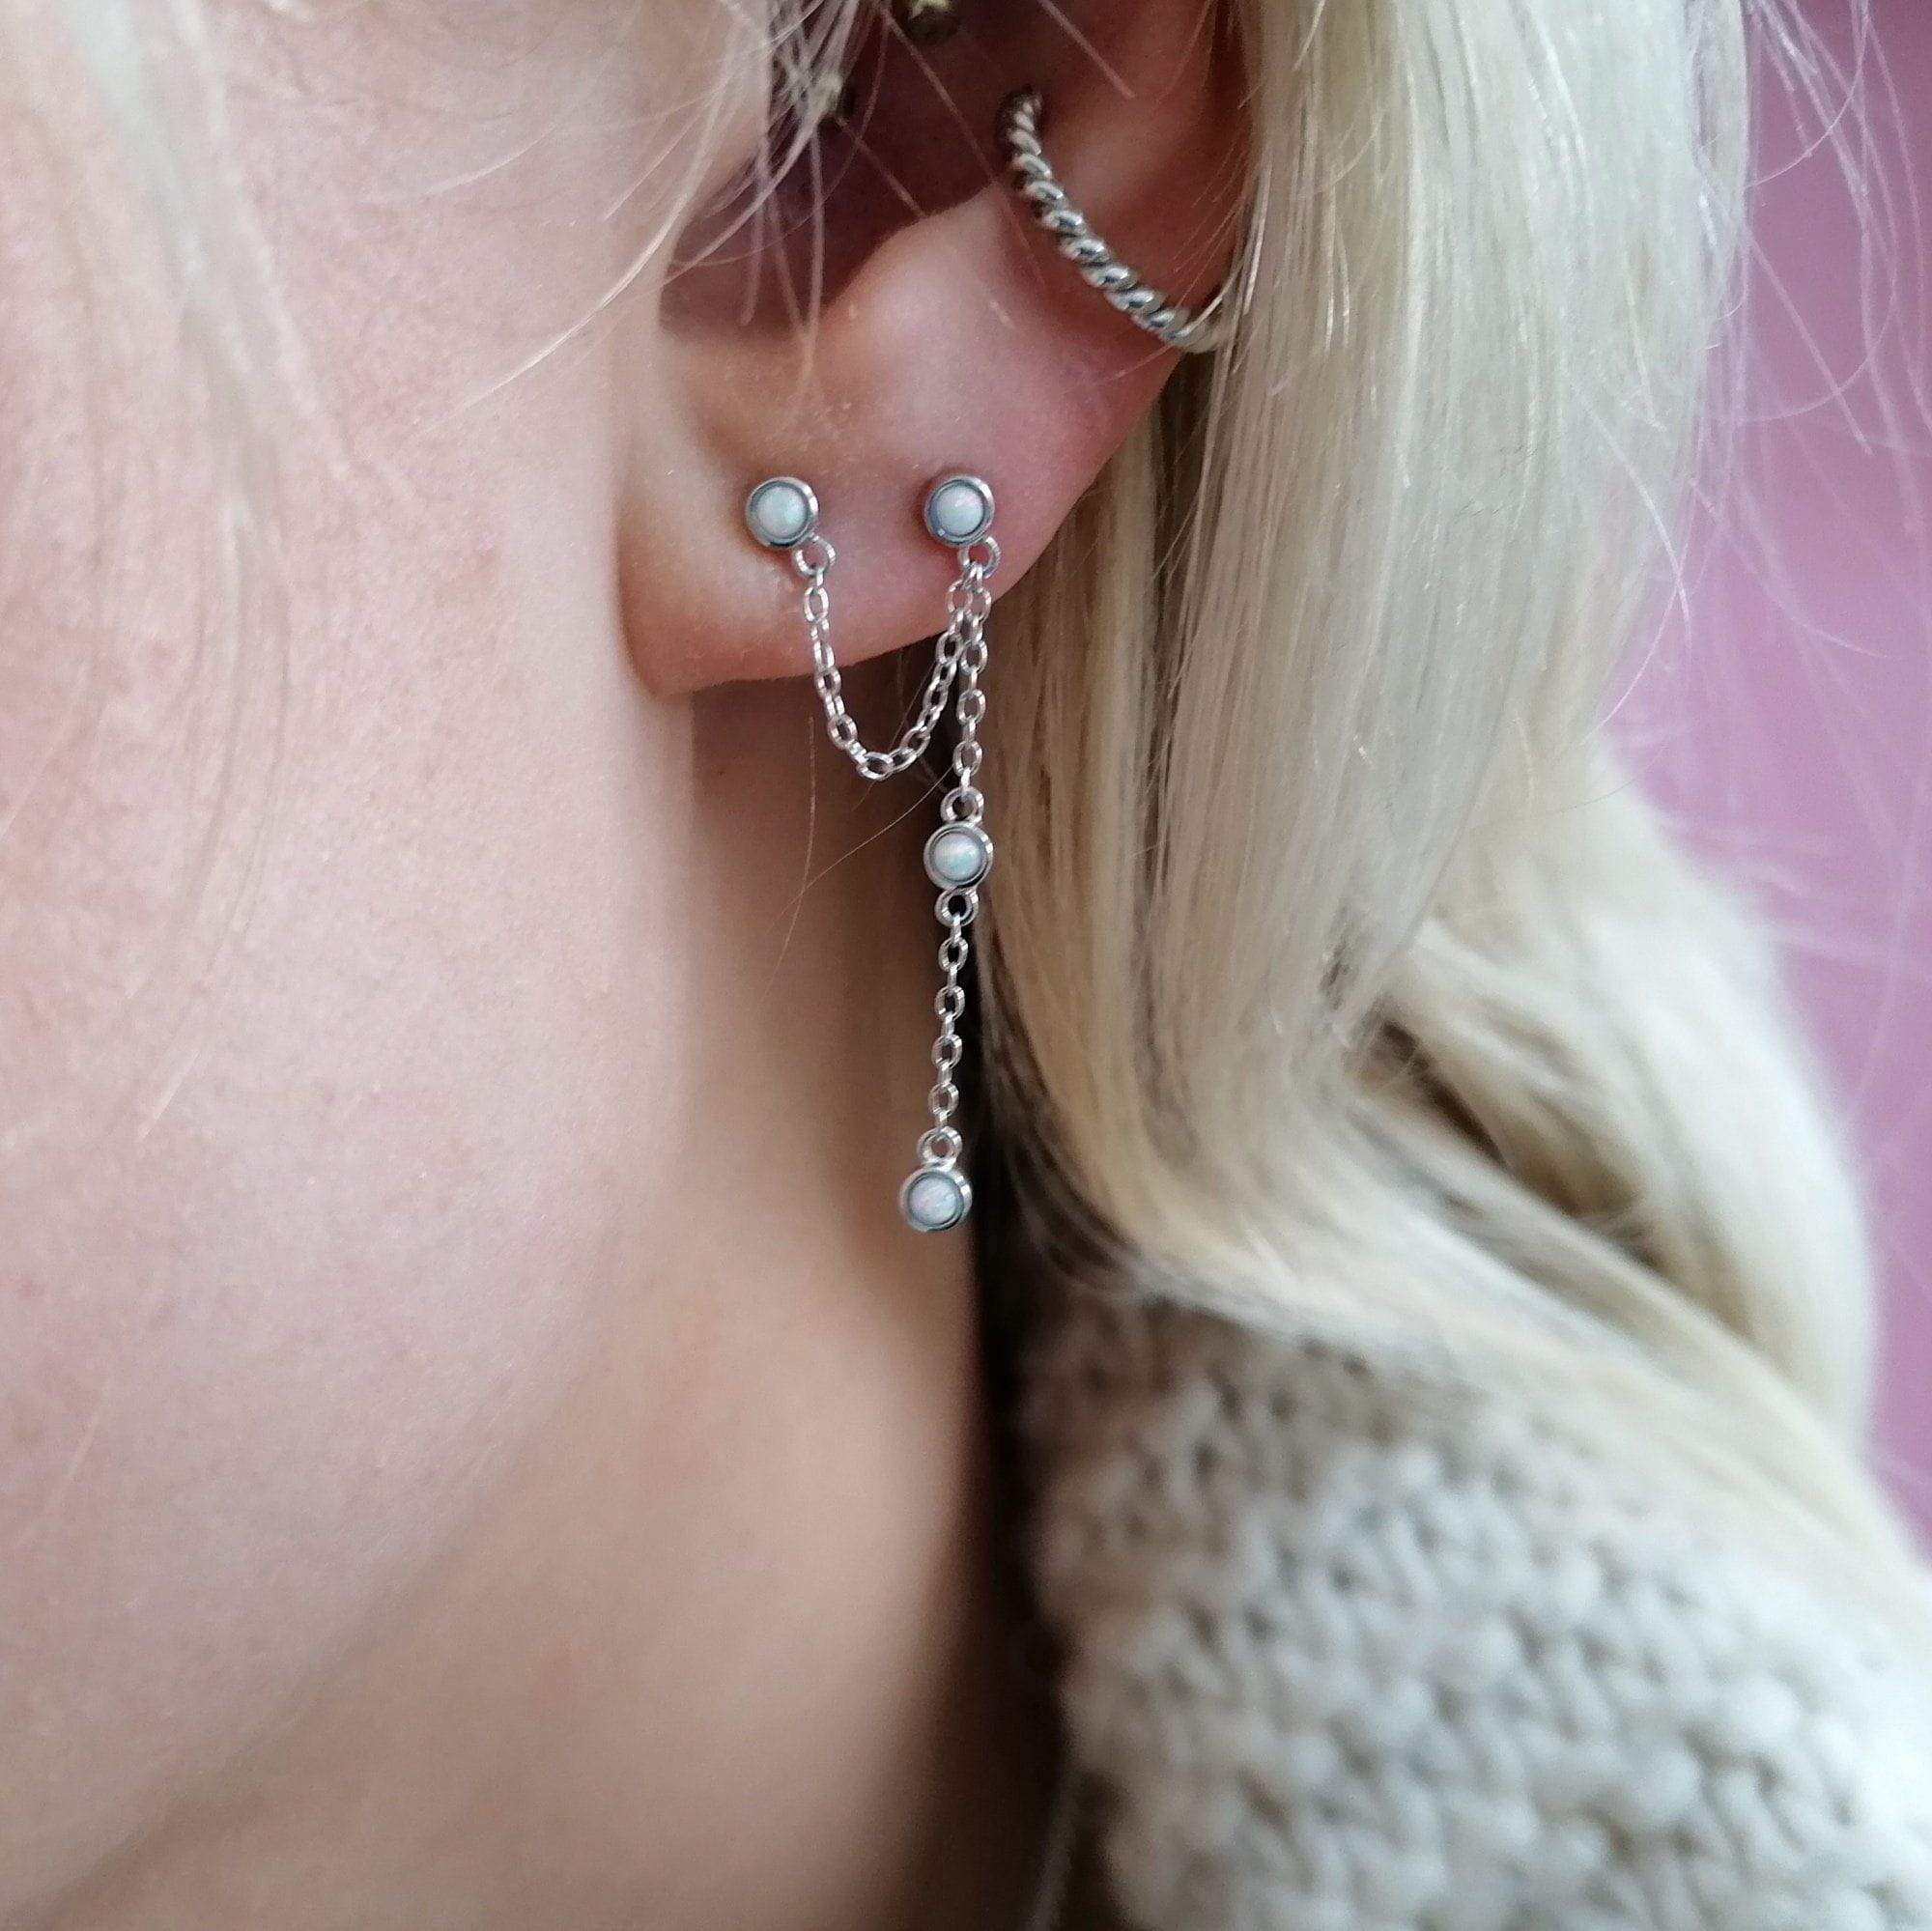  Opal Chandelier Stud Earring - by Scream Pretty